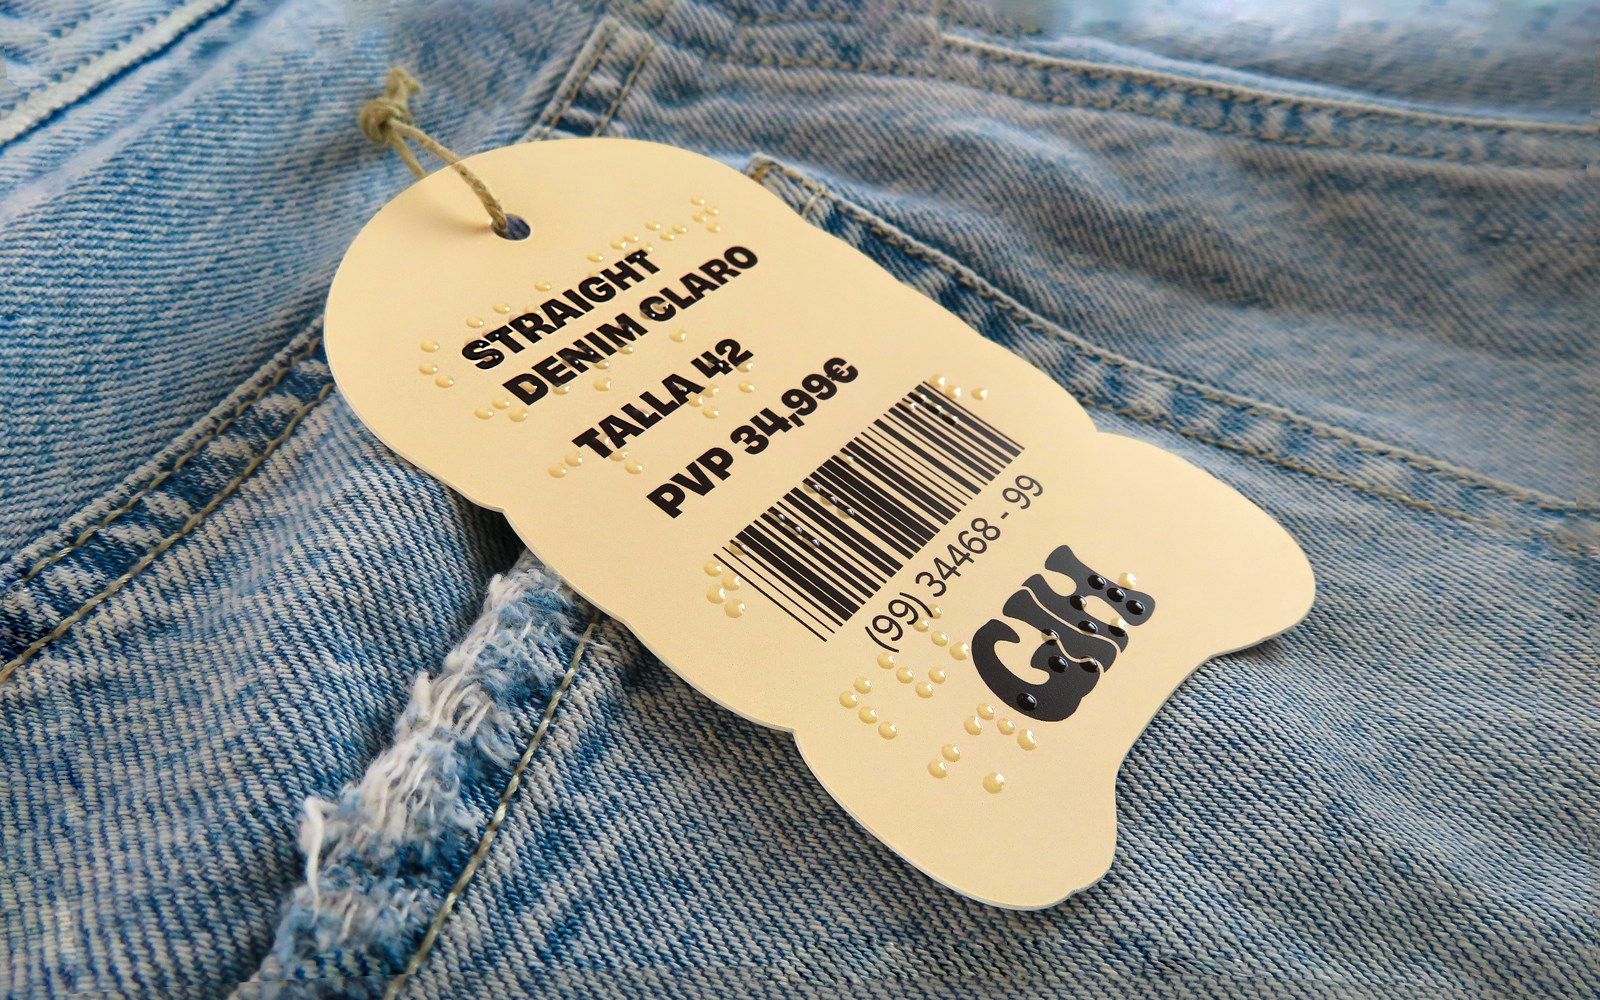 Diseño inclusivo con braille en etiqueta colgante de ropa